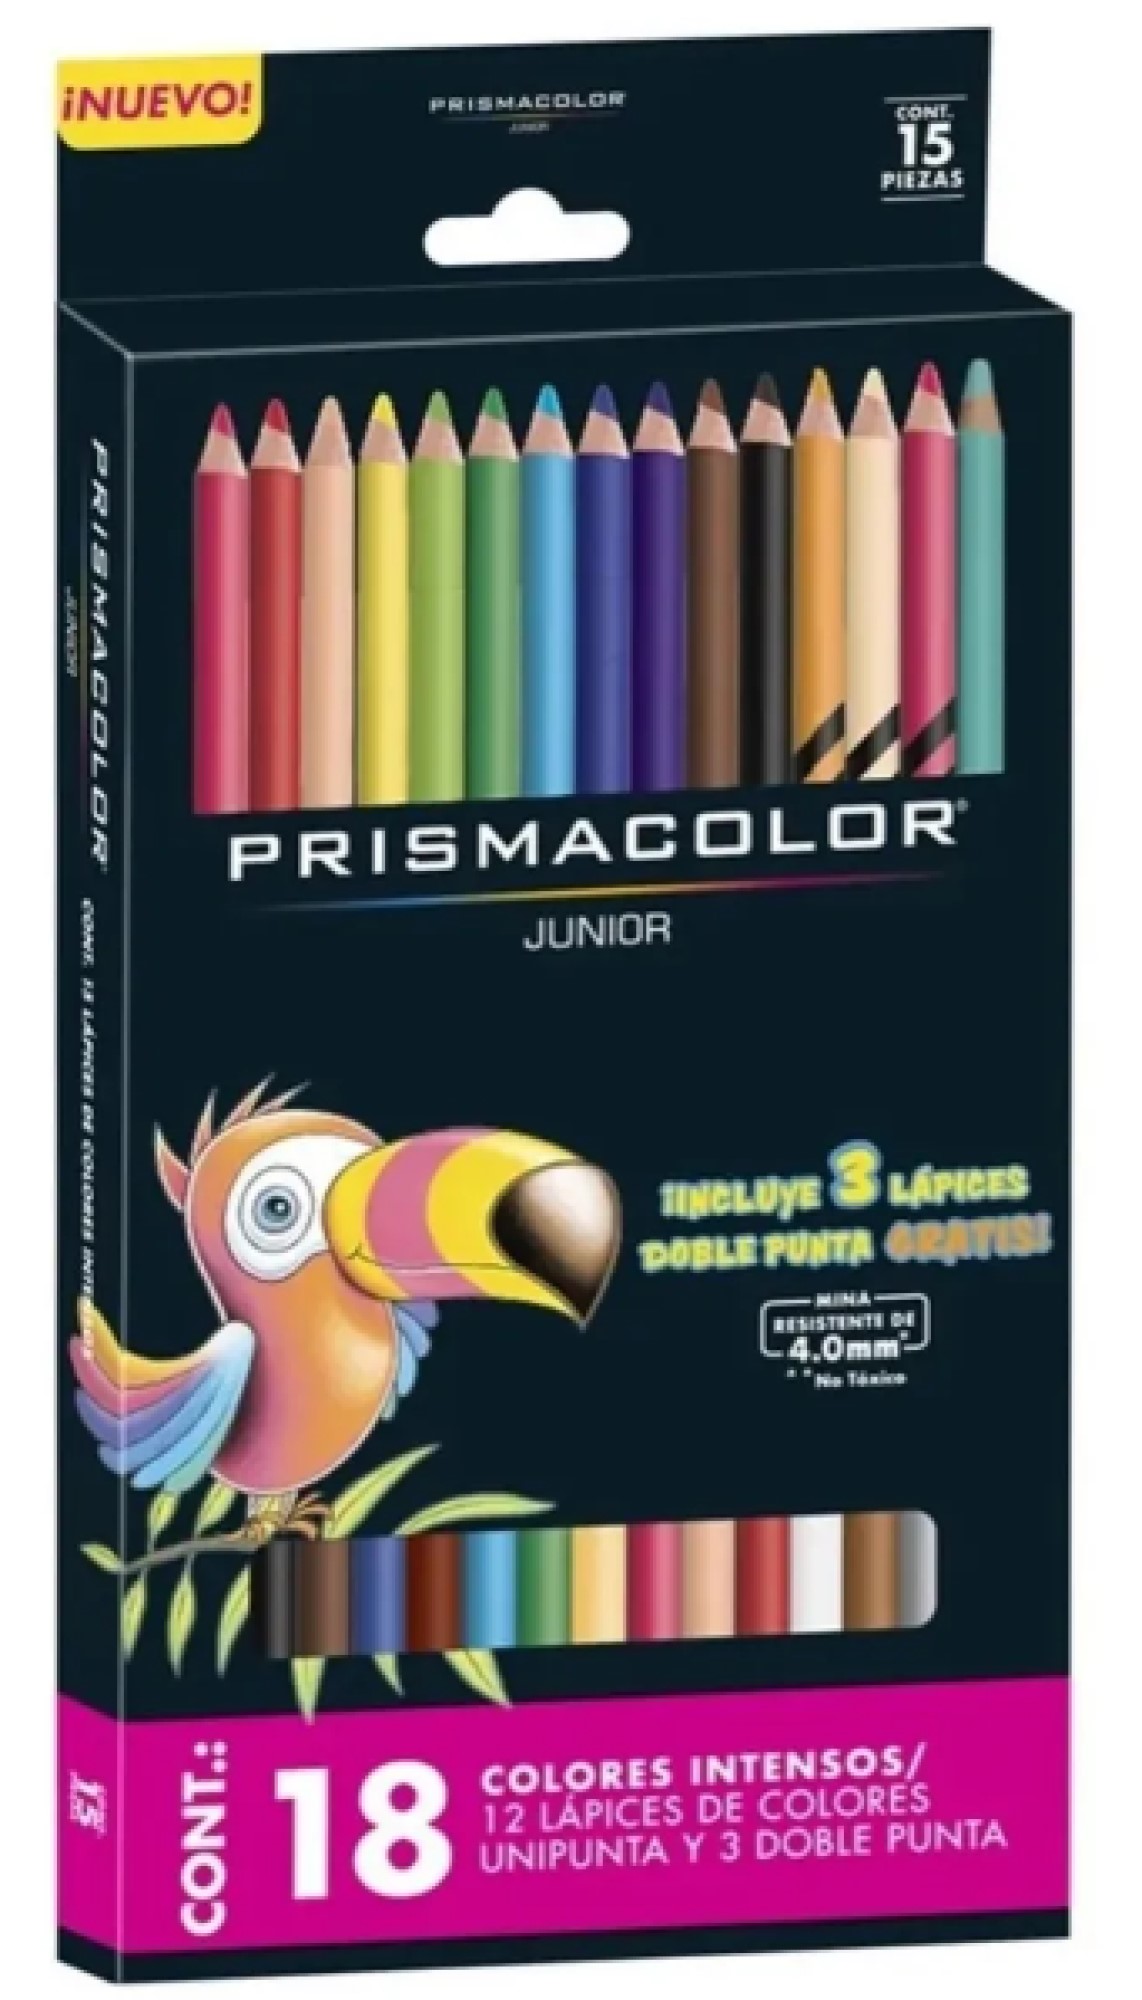 Lápices de Colores con Sacapuntas 36 piezas Crayola